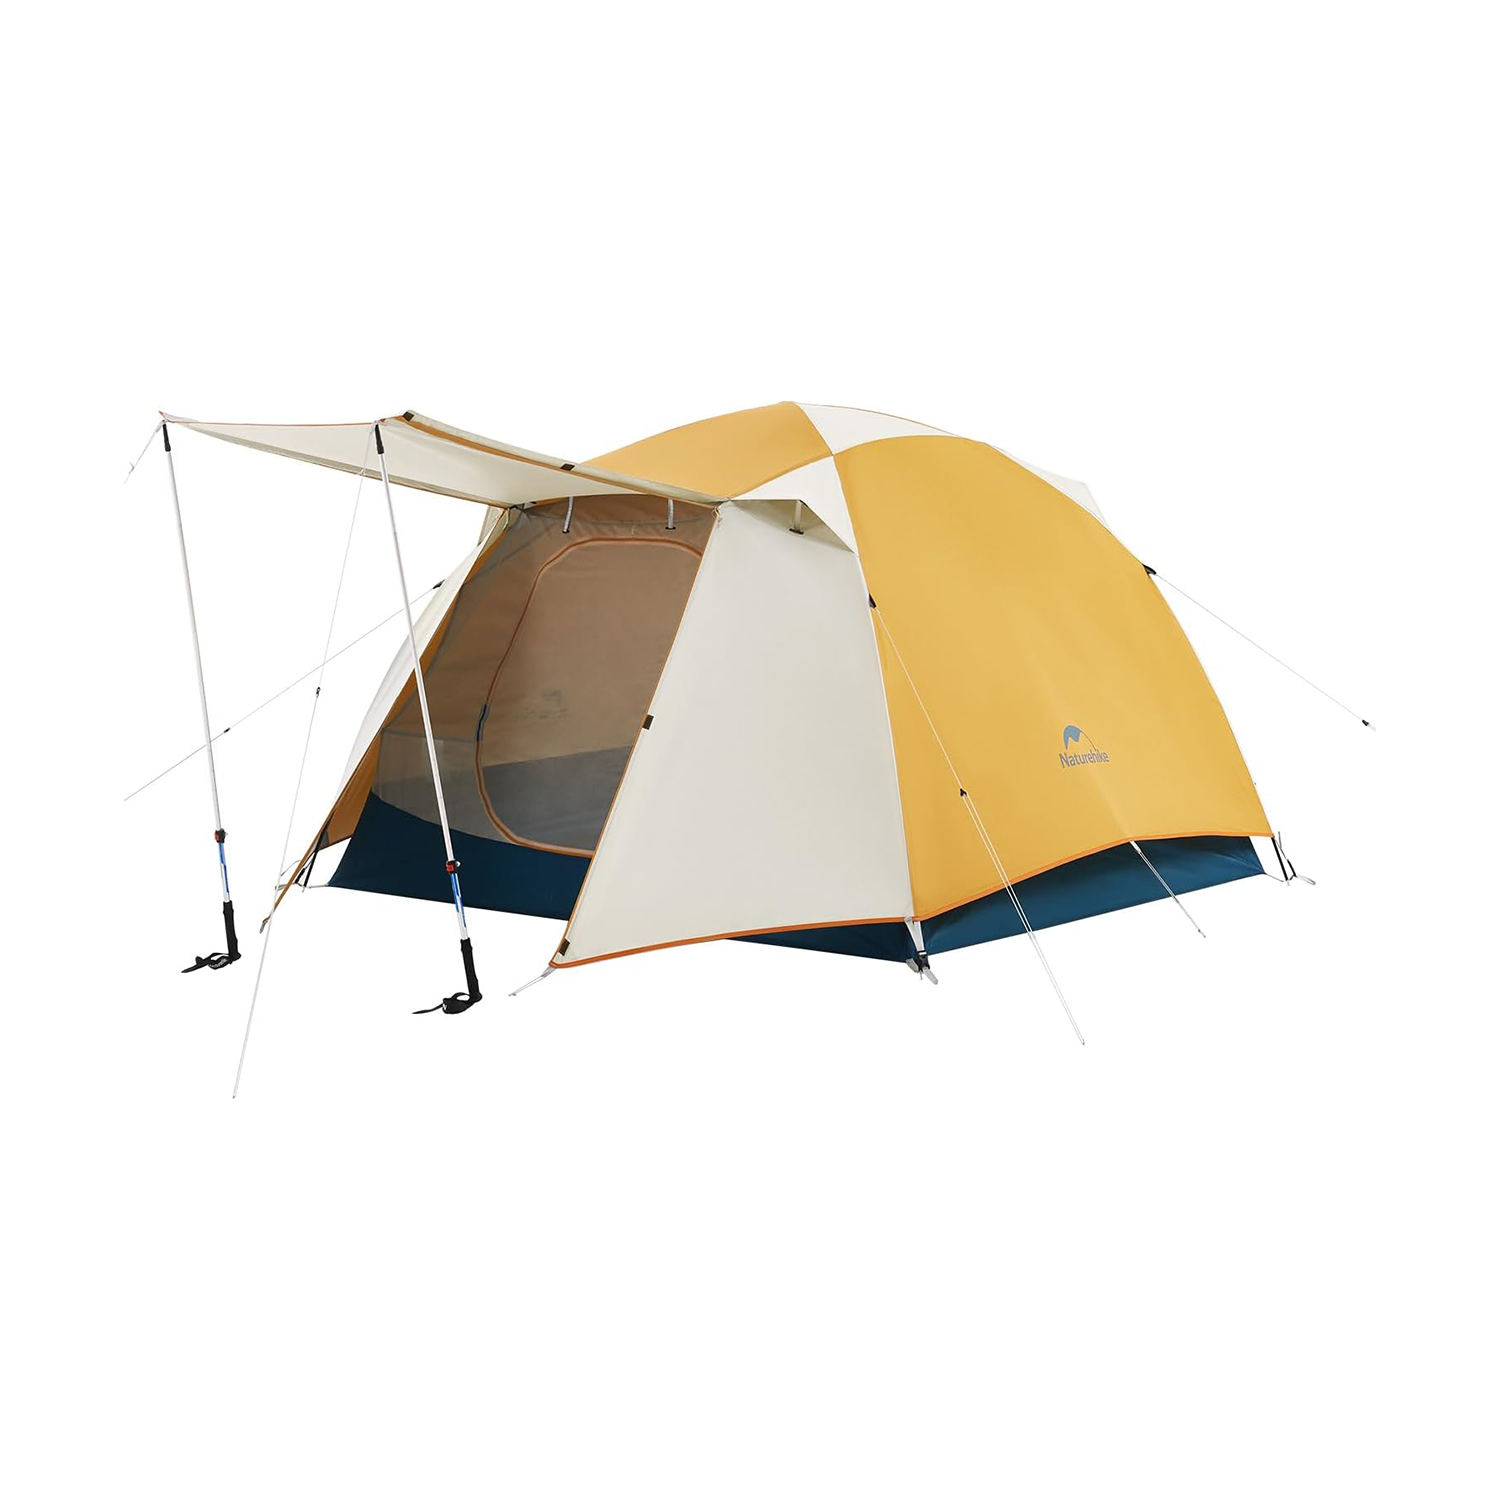 ネイチャーハイク Cloud River テント 2人用 軽量 ソロキャンプ 登山 自立式 前室付きダブルウォール アウトドア